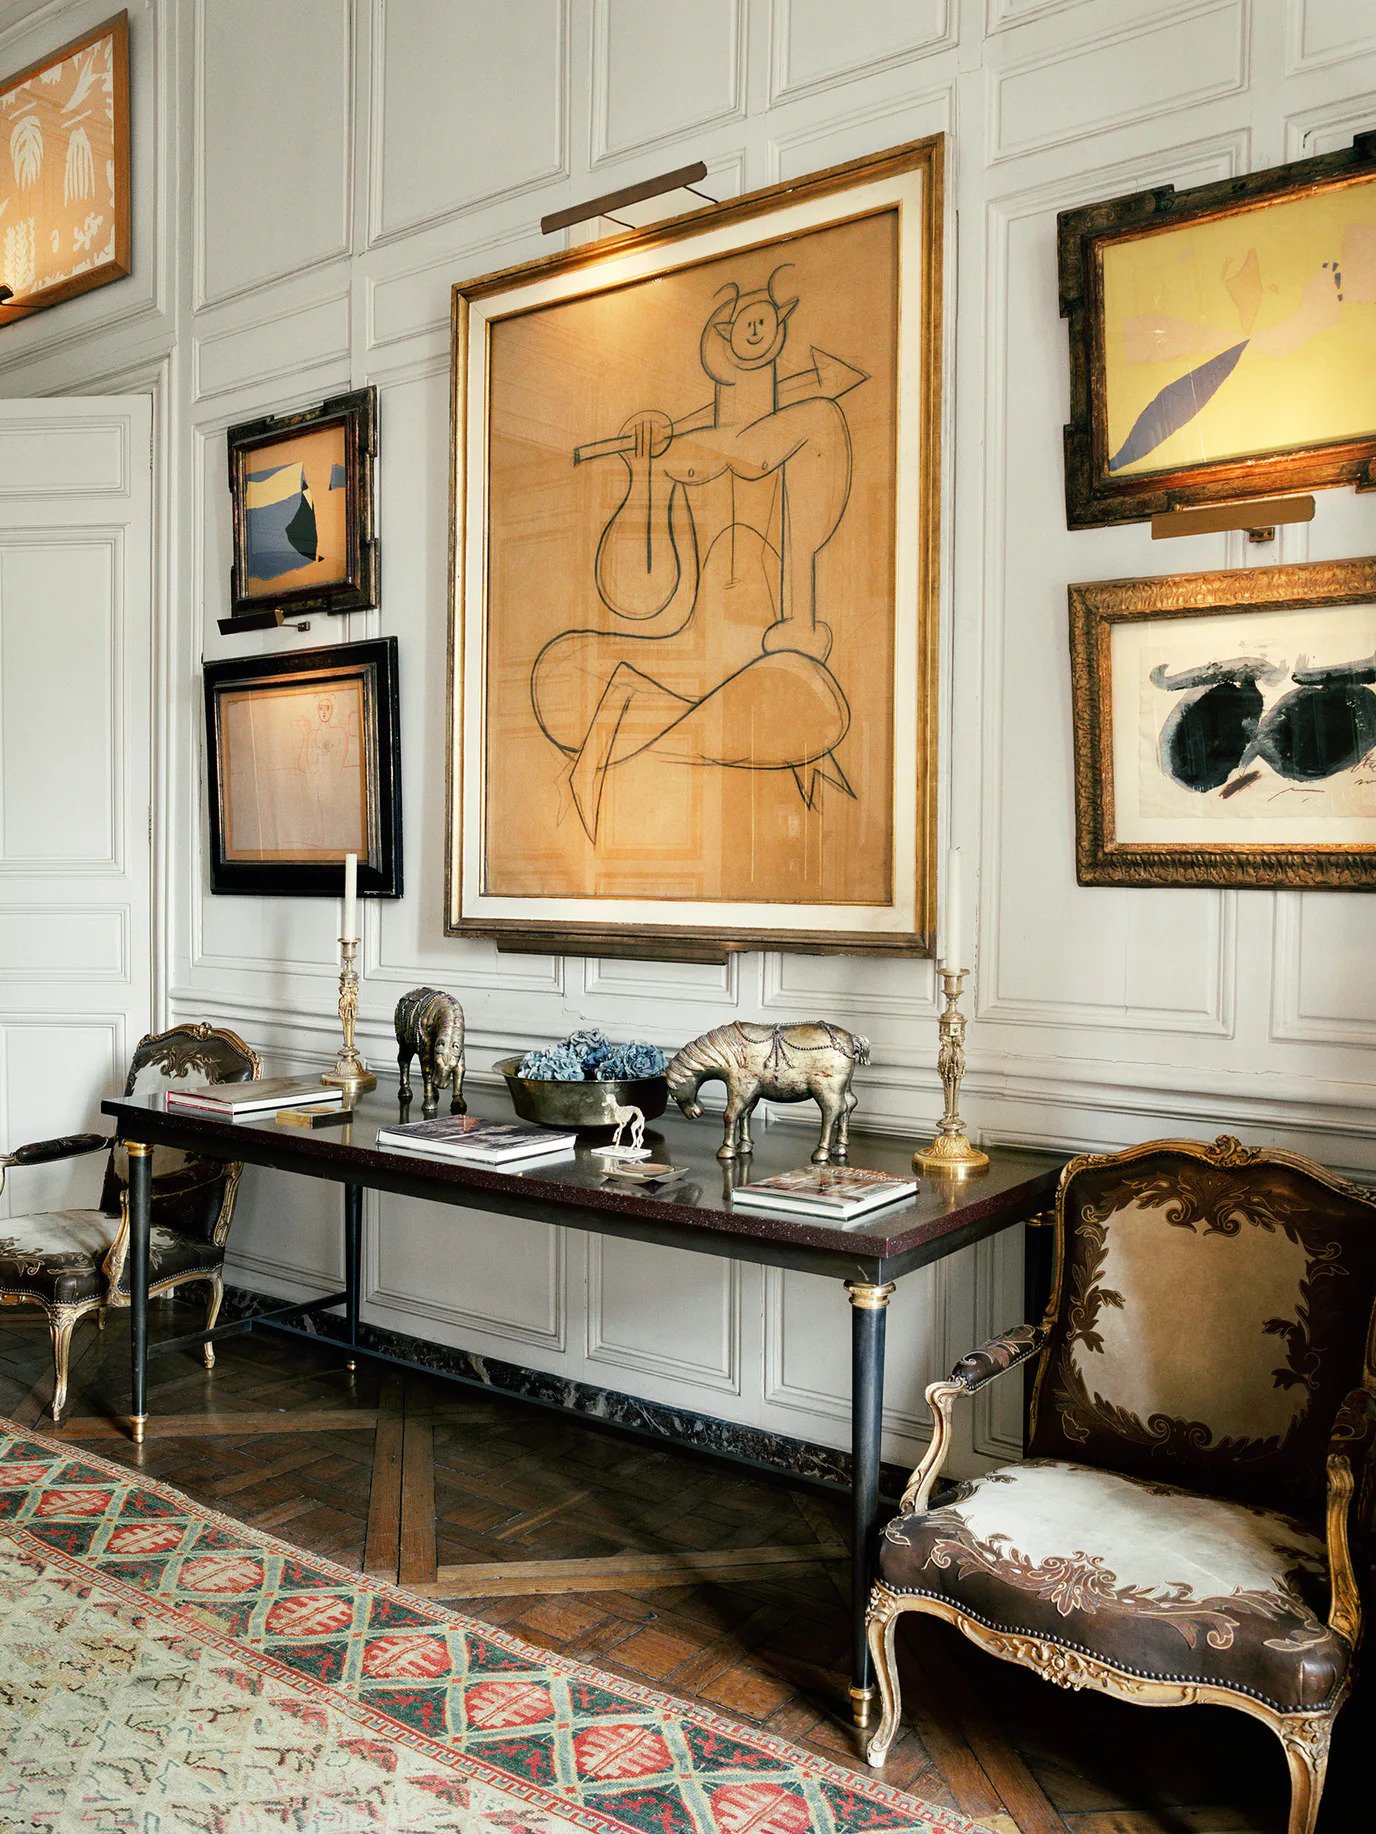 Cristobal Balenciaga, Philippe Venet, Hubert de Givenchy: Grand